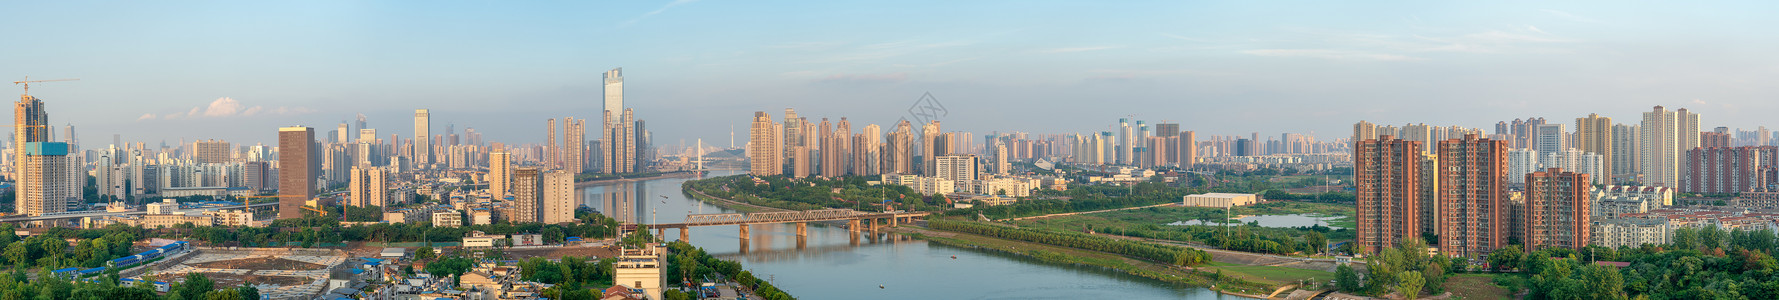 酒店高层俯瞰城市江景全景长片高清图片